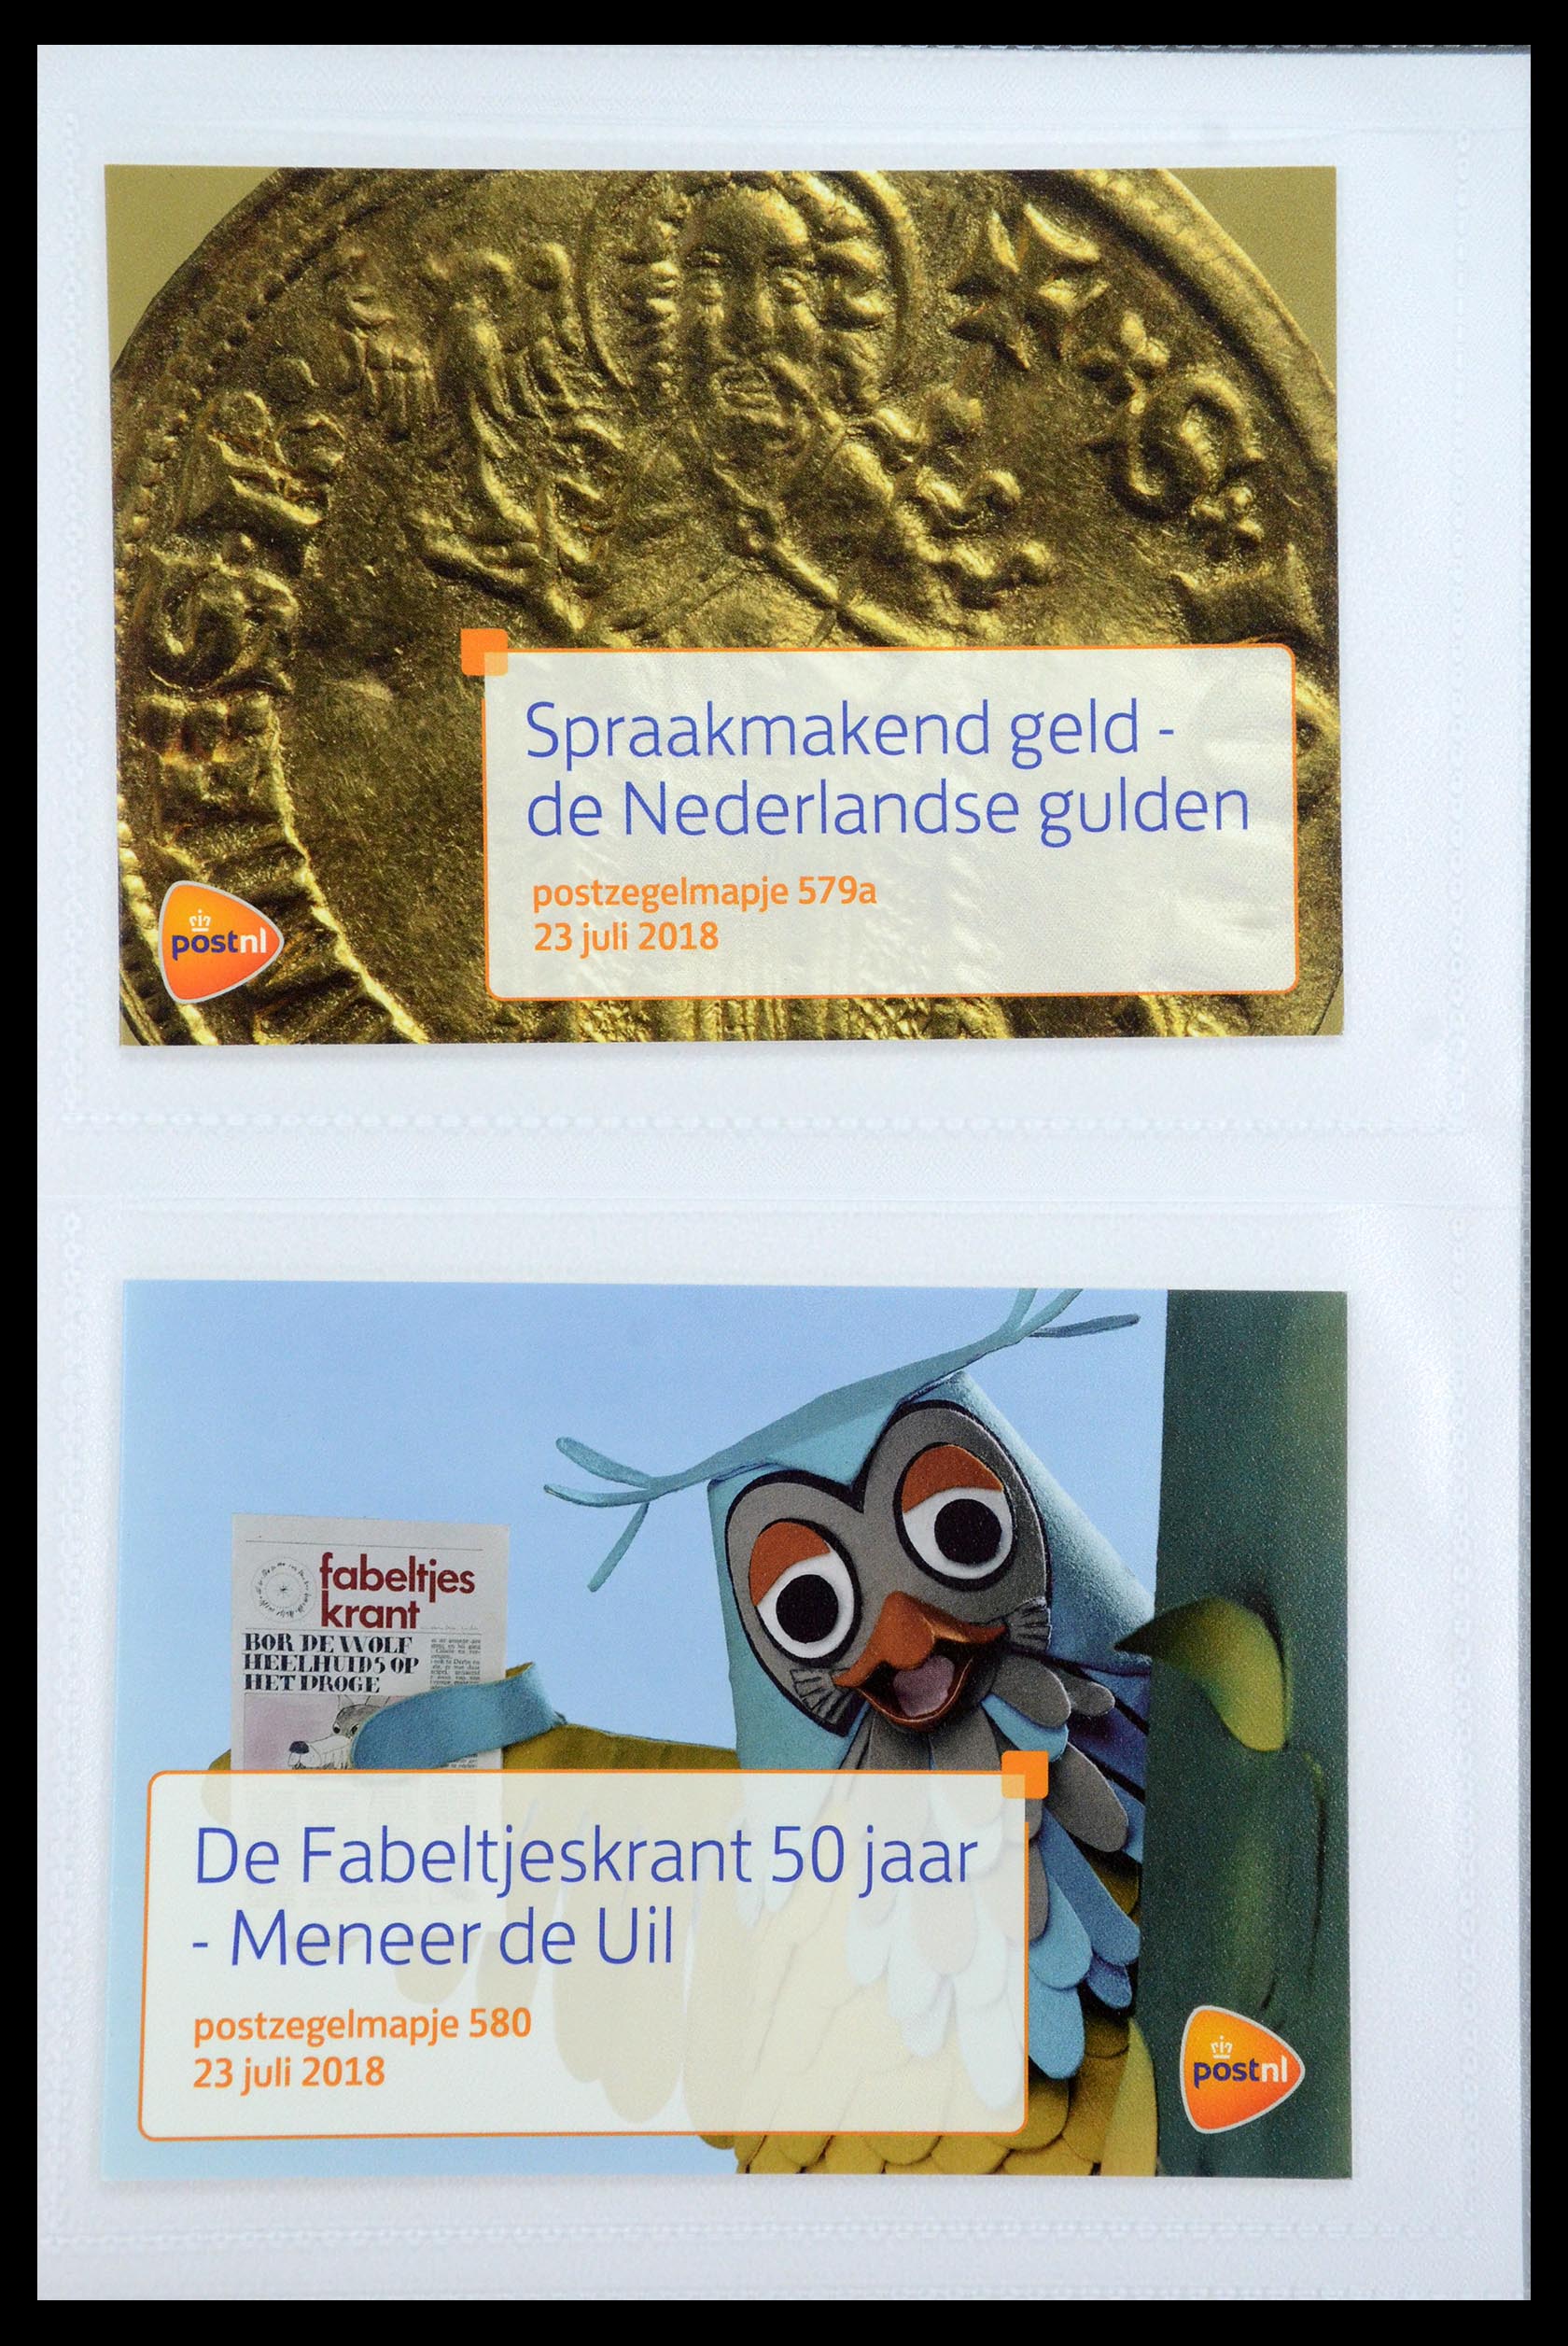 35947 350 - Stamp Collection 35947 Netherlands PTT presentation packs 1982-2019!